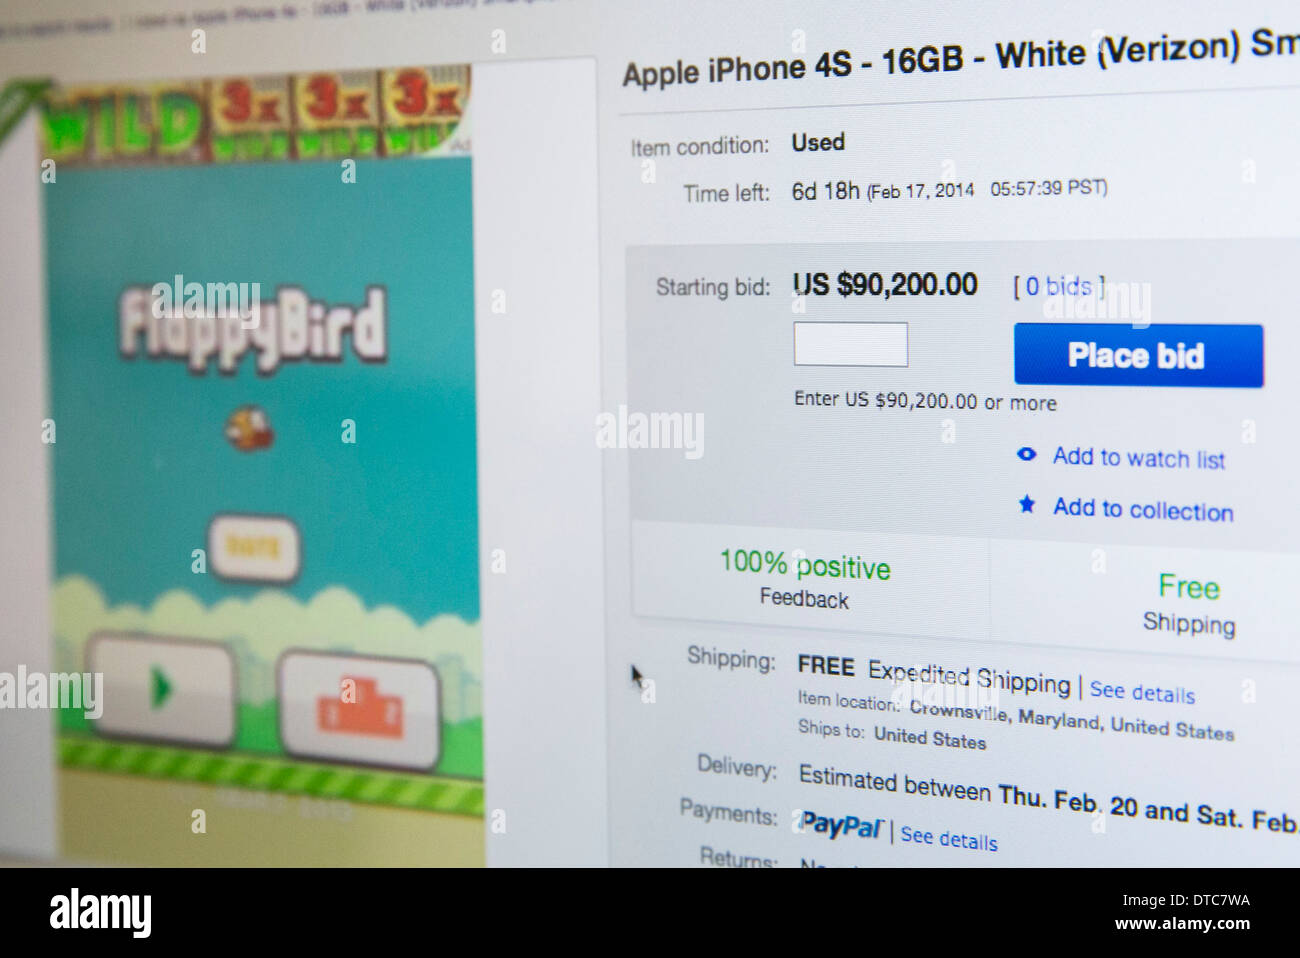 Un iPhone cargado con la app FlappyBird enumeradas en eBay por $90,200.00. Foto de stock